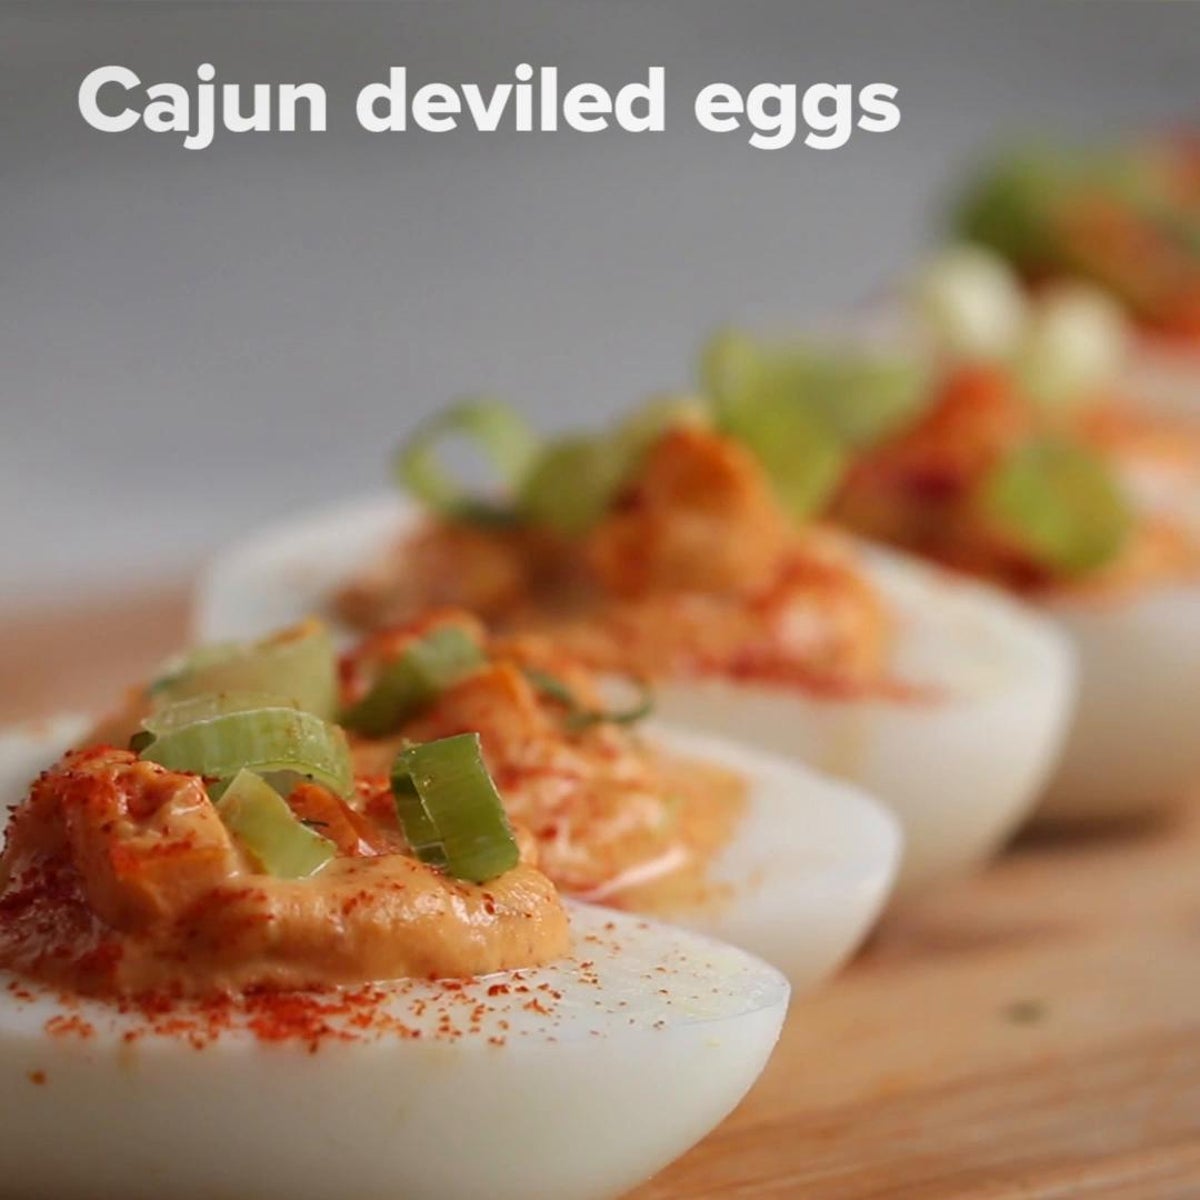 Cajun Seasoning Deviled Eggs – Spicewalla